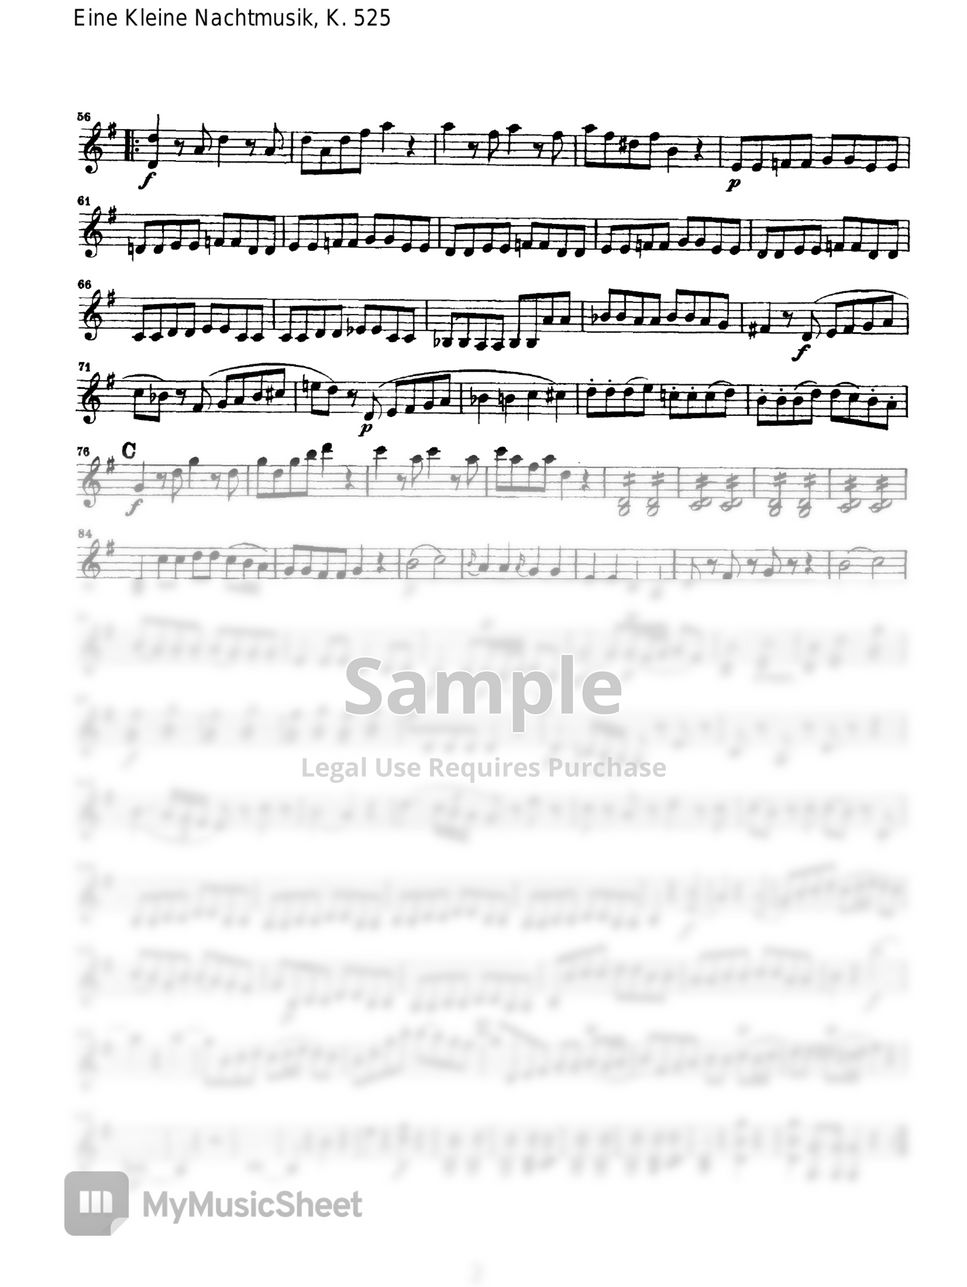 W.A.Mozart - Eine Kleine Nacht musik - Violin I & II by Original Sheet